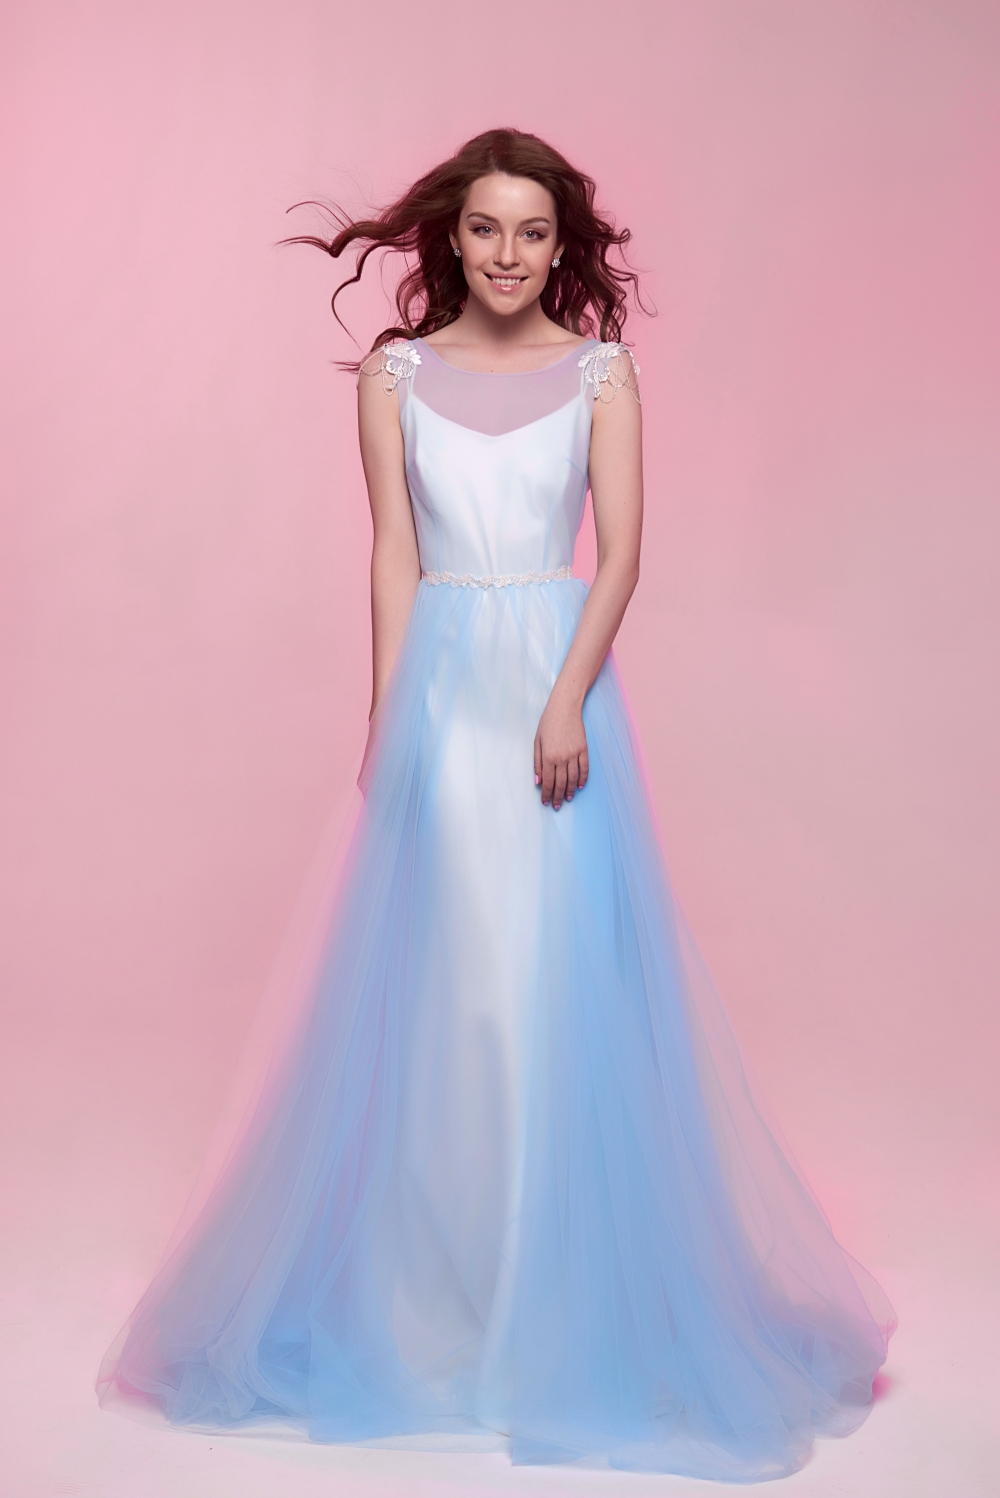 Оригинальное свадебное платье для нестандартных невест. Лёгкий и воздушный кейп может дополнить любое лаконичное платье.